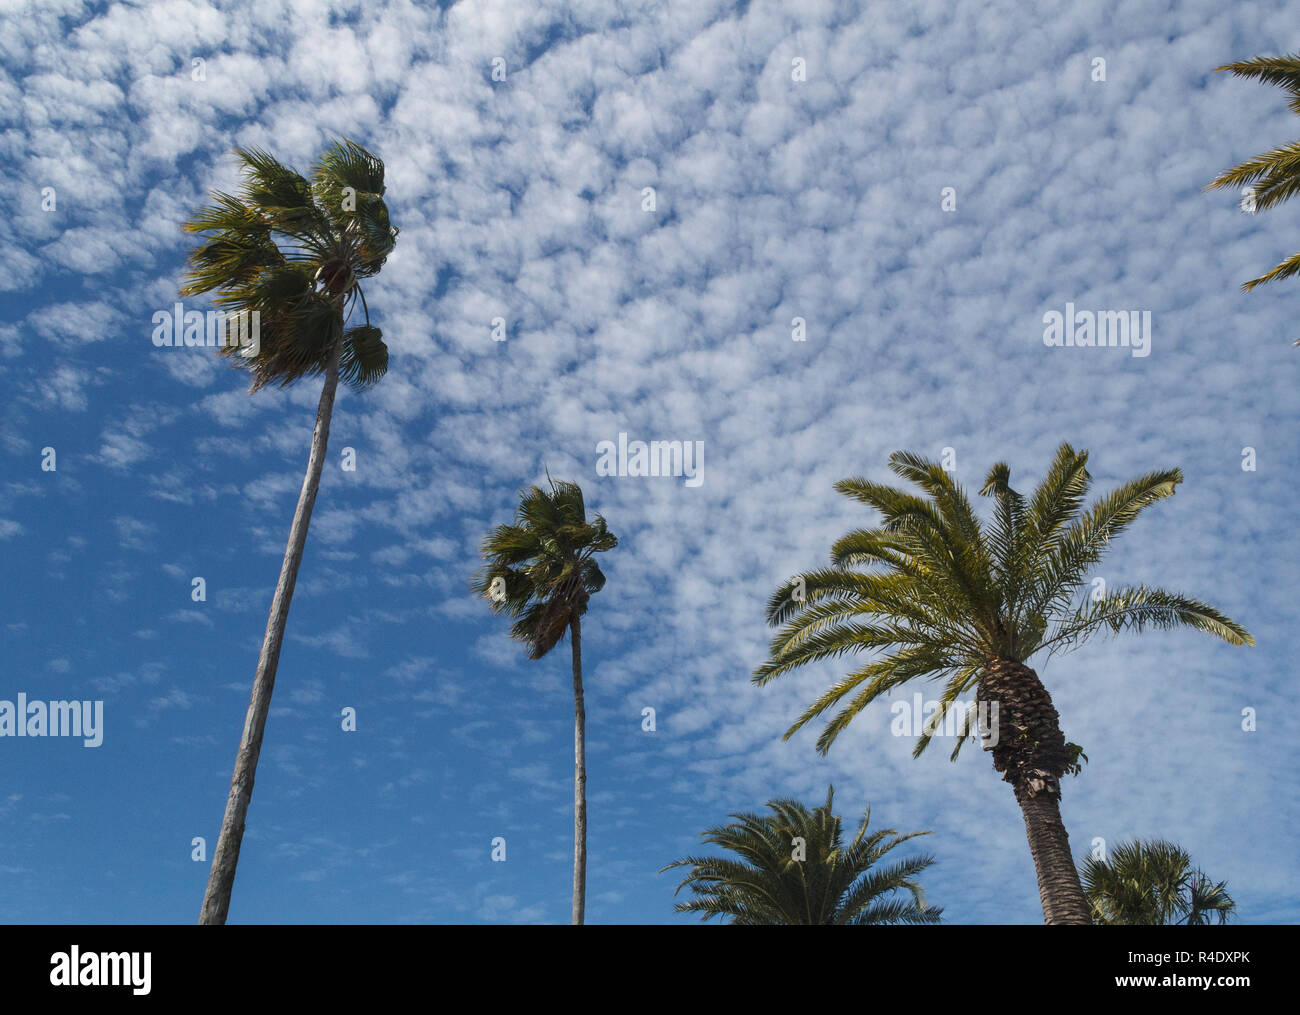 Gran formación de nubes cirros sobre altísimas palmeras, Florida, EE.UU. Foto de stock